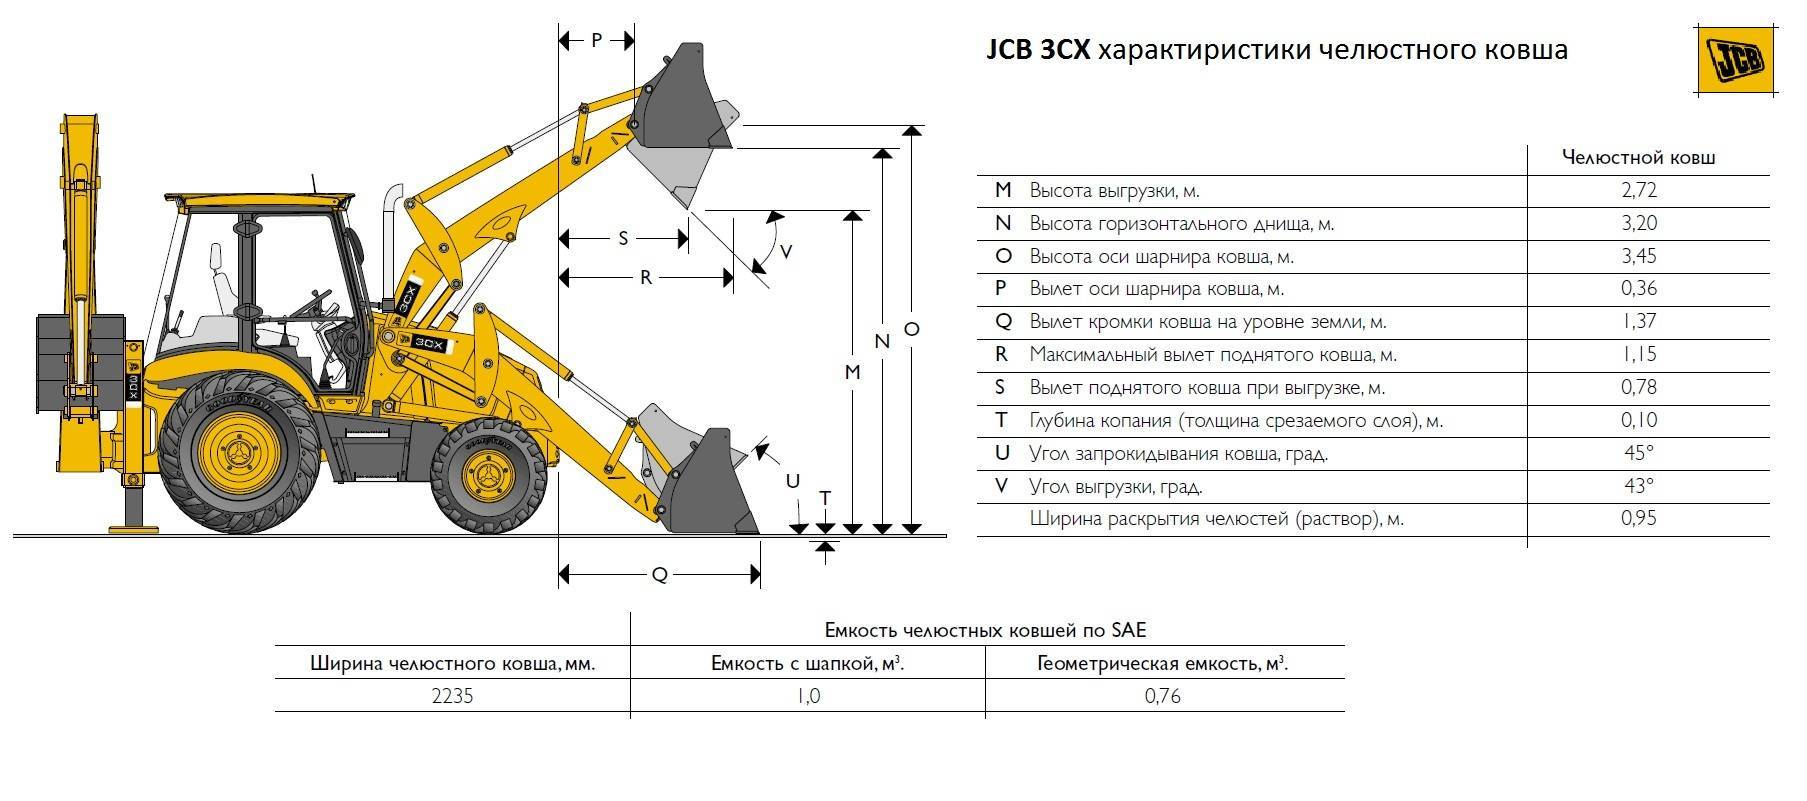 Экскаватор погрузчик jbc 3cx: технические характеристики, особенности